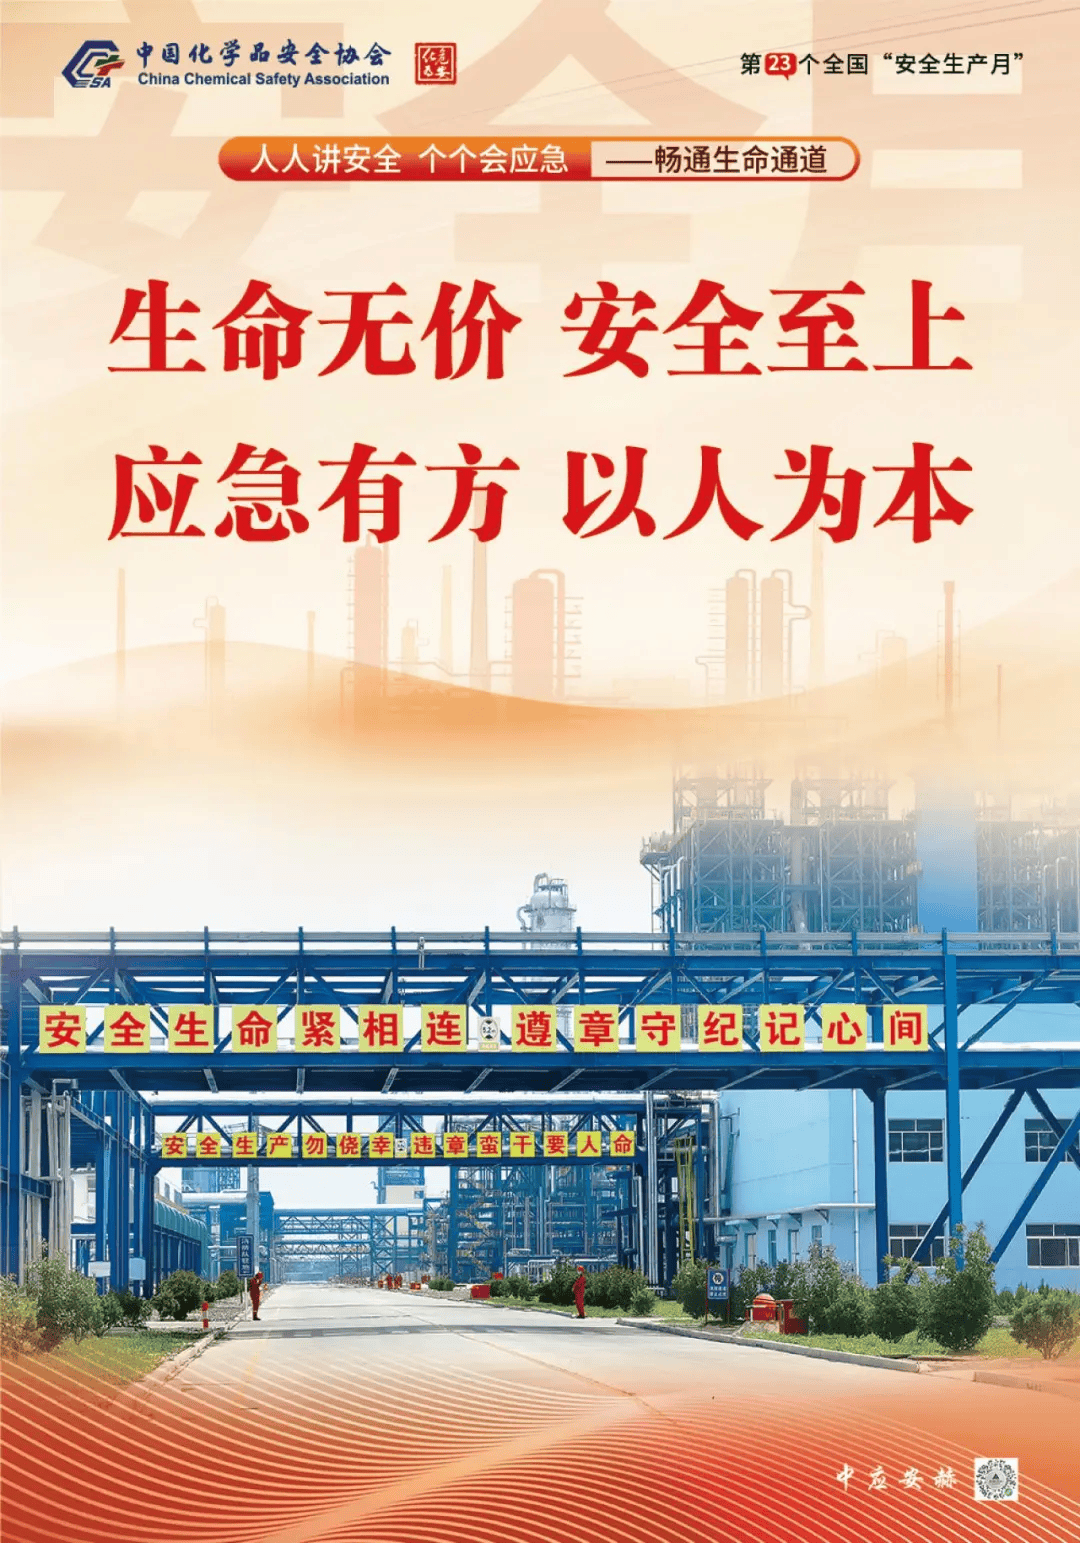 2024年安全生产月主题海报中国化学品安全协会发布2024年安全生产